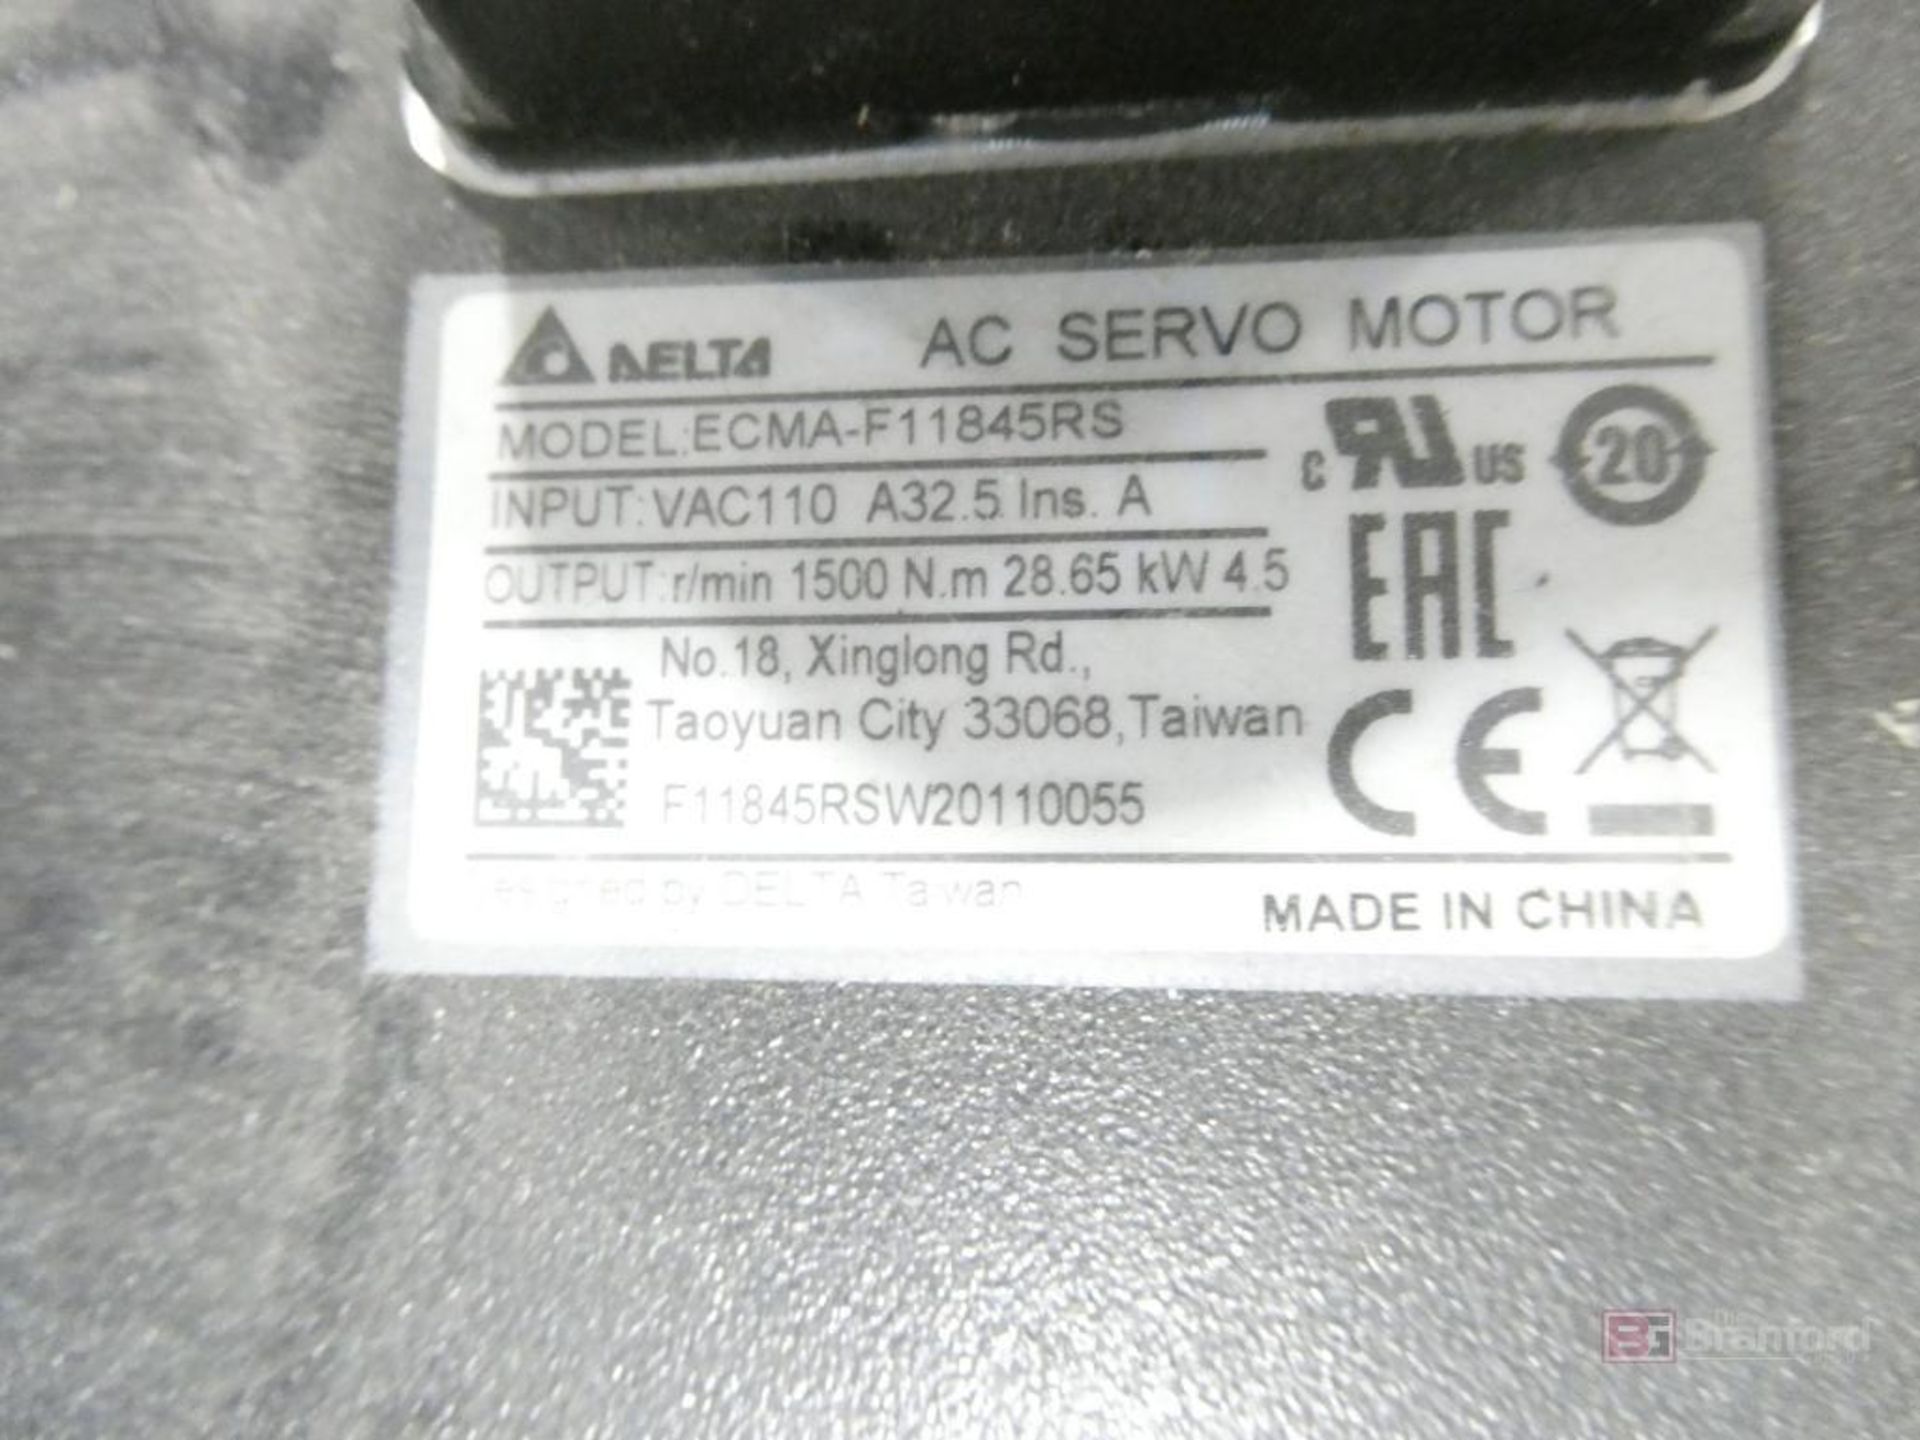 (3) Delta Model ECMA-F11830RS, AC Servo Motors (New) - Image 3 of 3